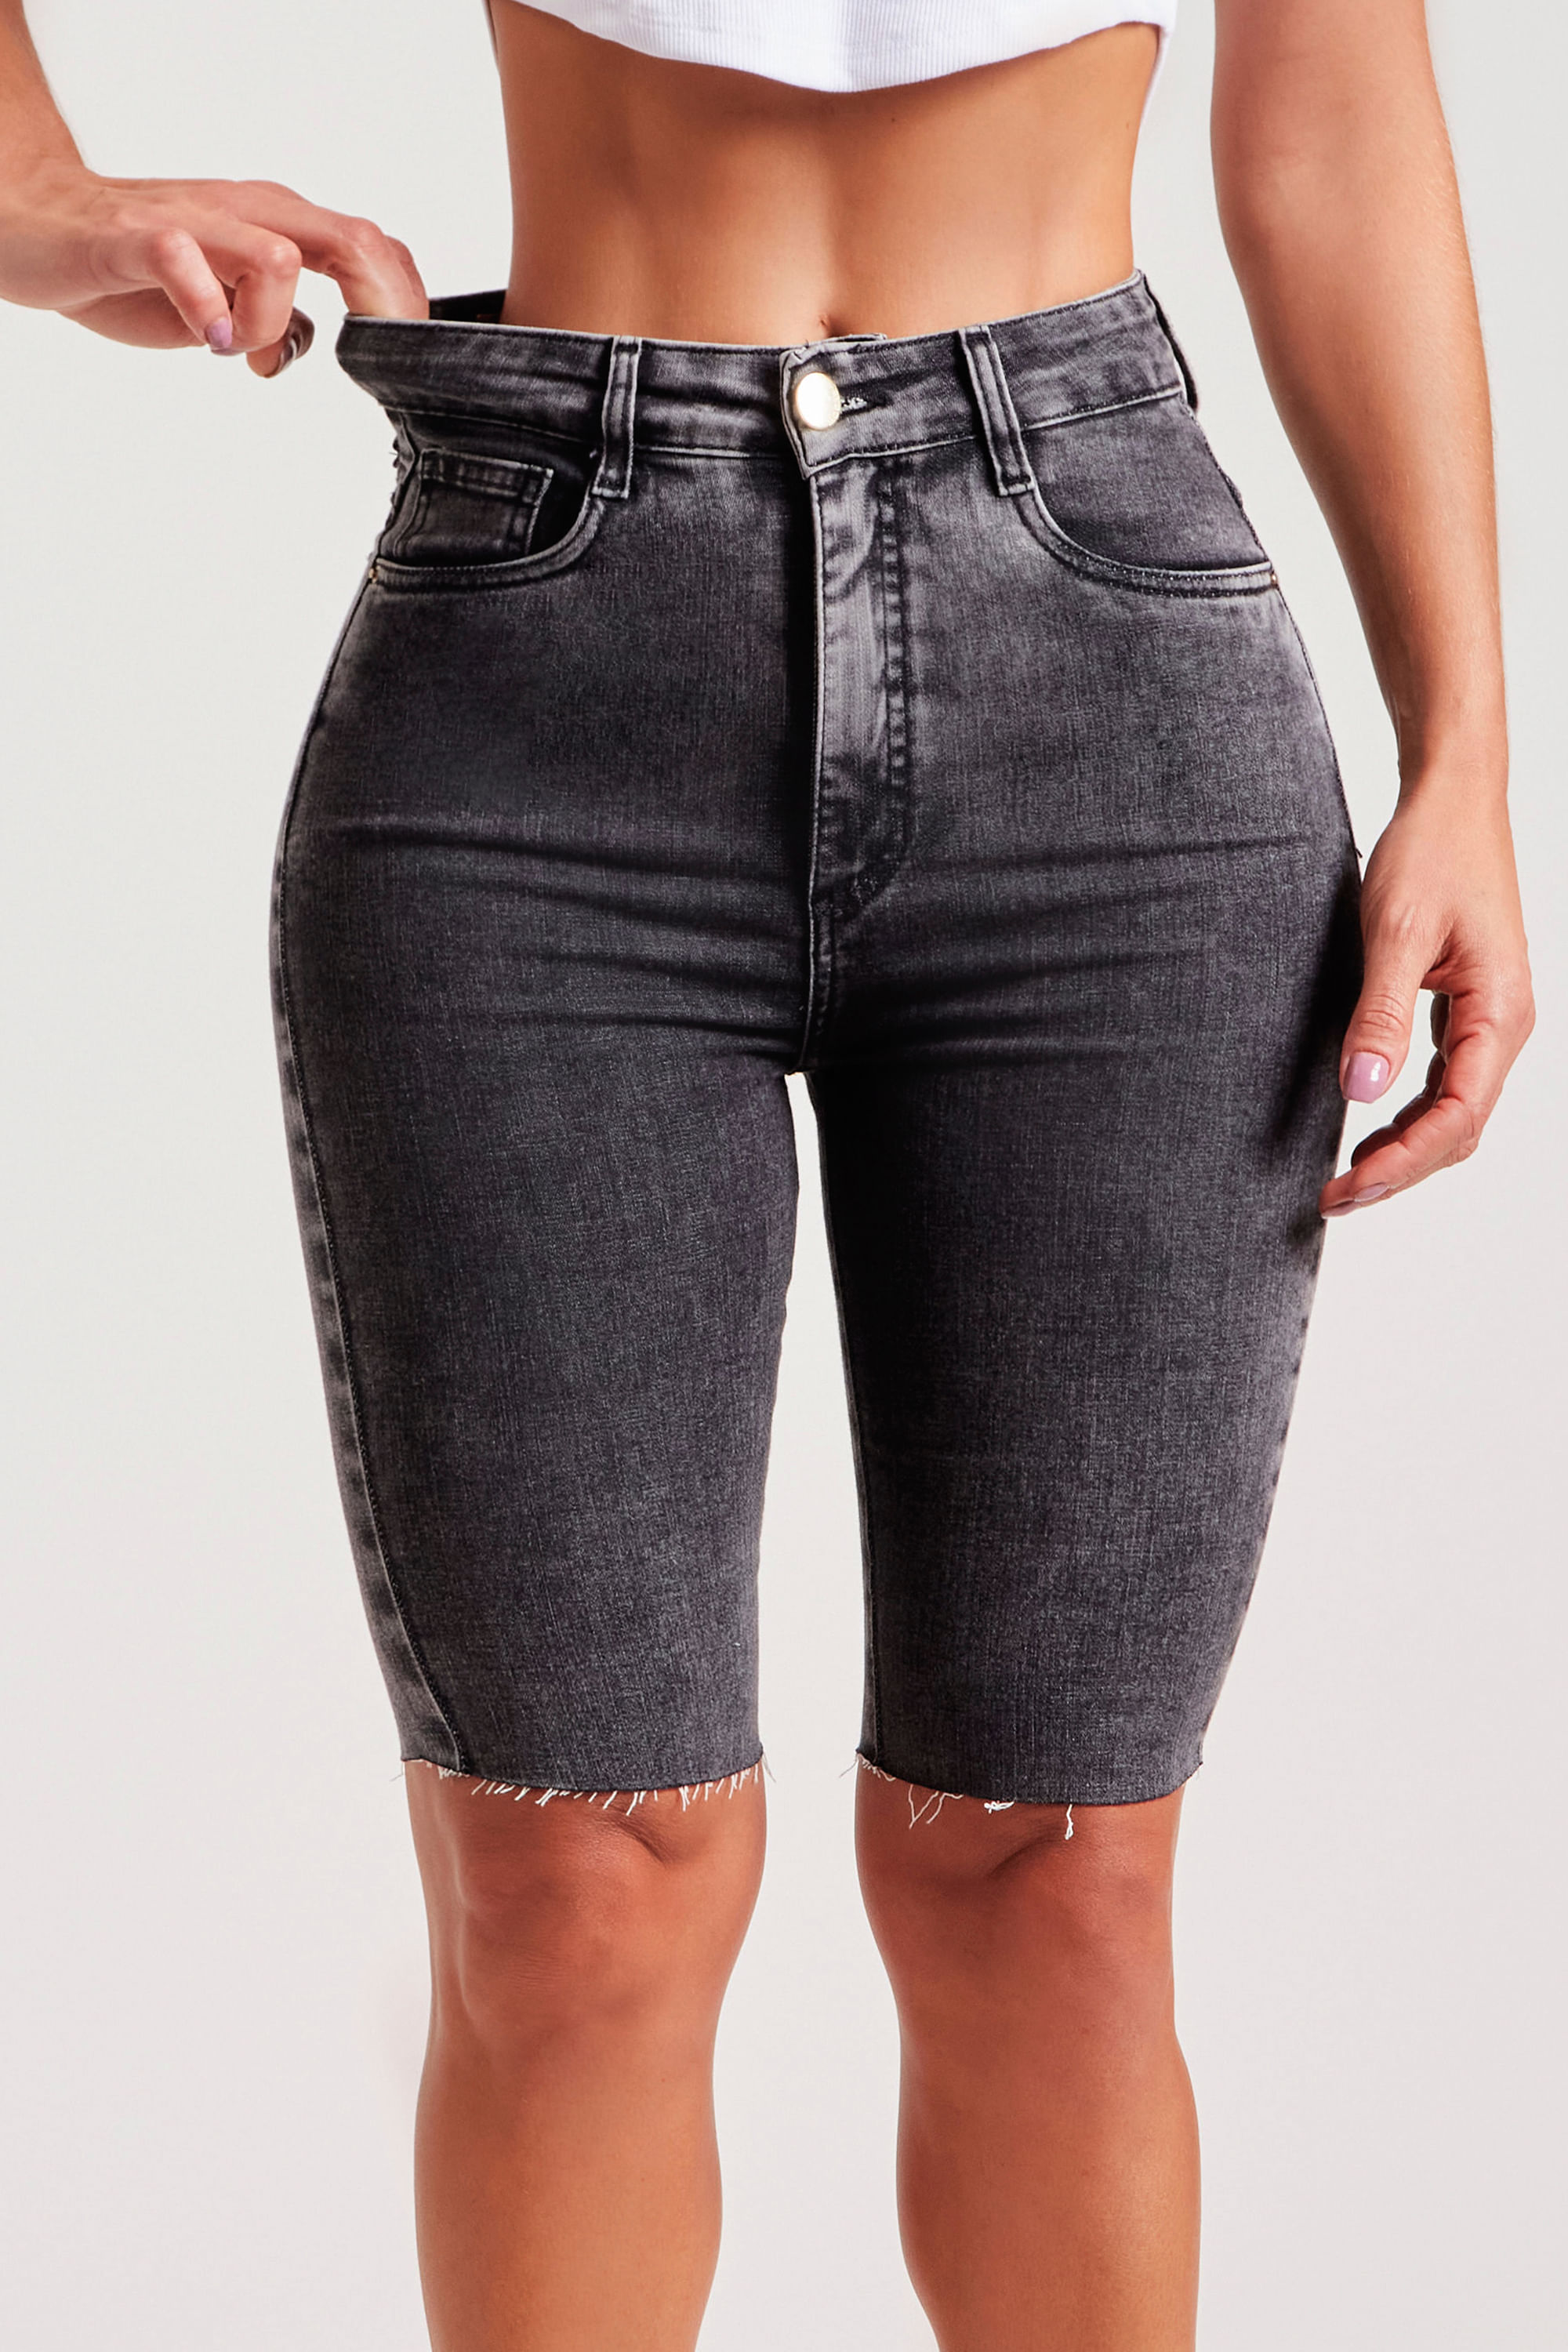 Shorts Jeans Modelador Basic Claro - Modab